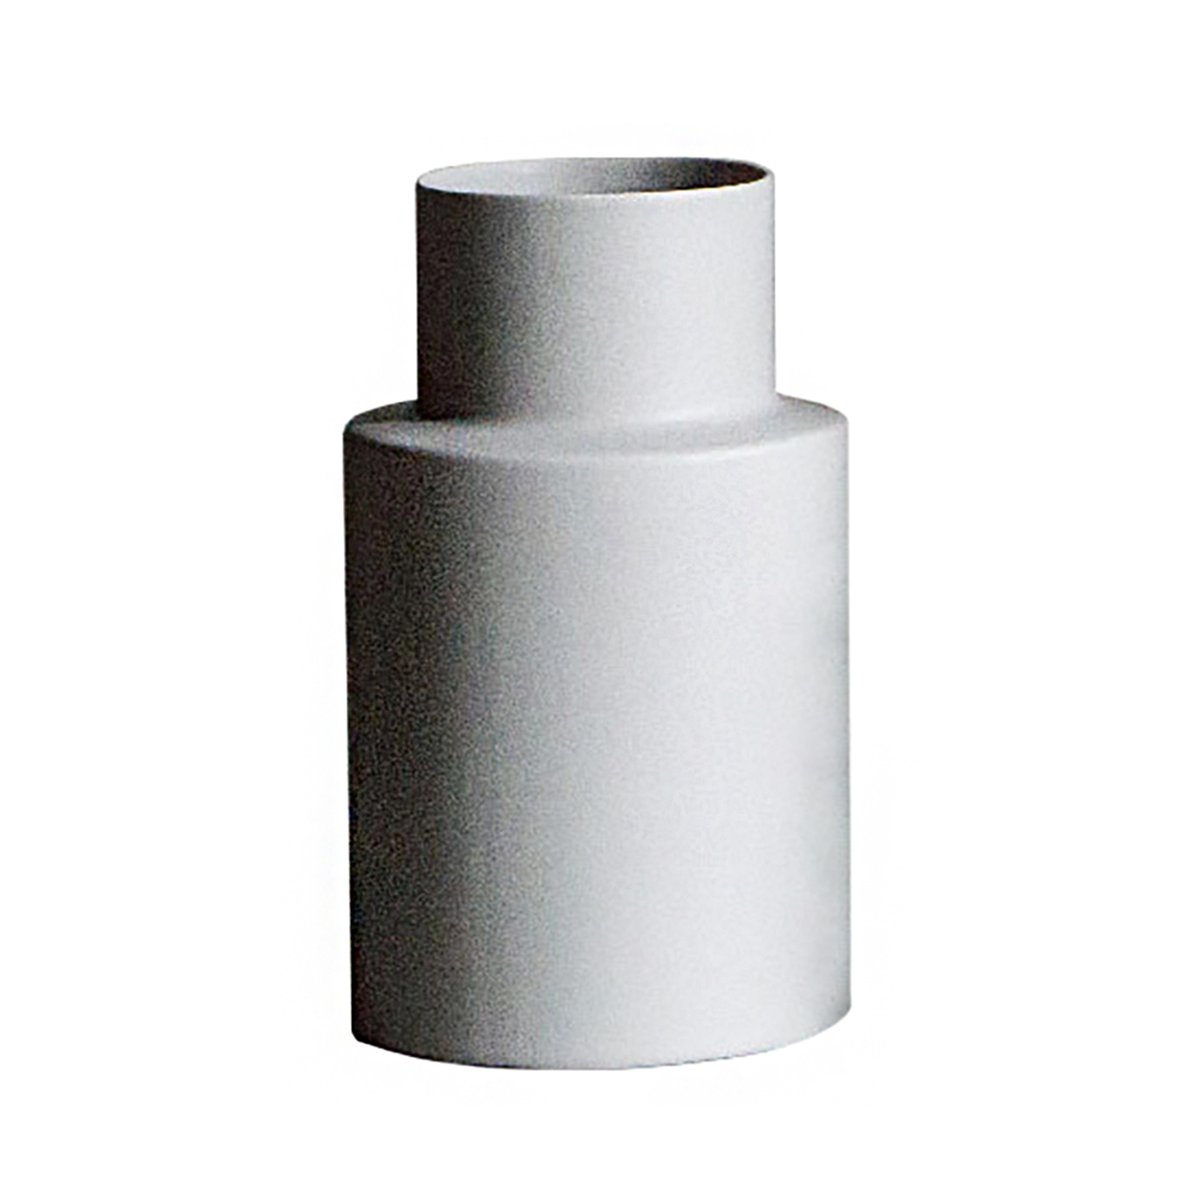 Bilde av DBKD Oblong vase mole (grå) small 24 cm